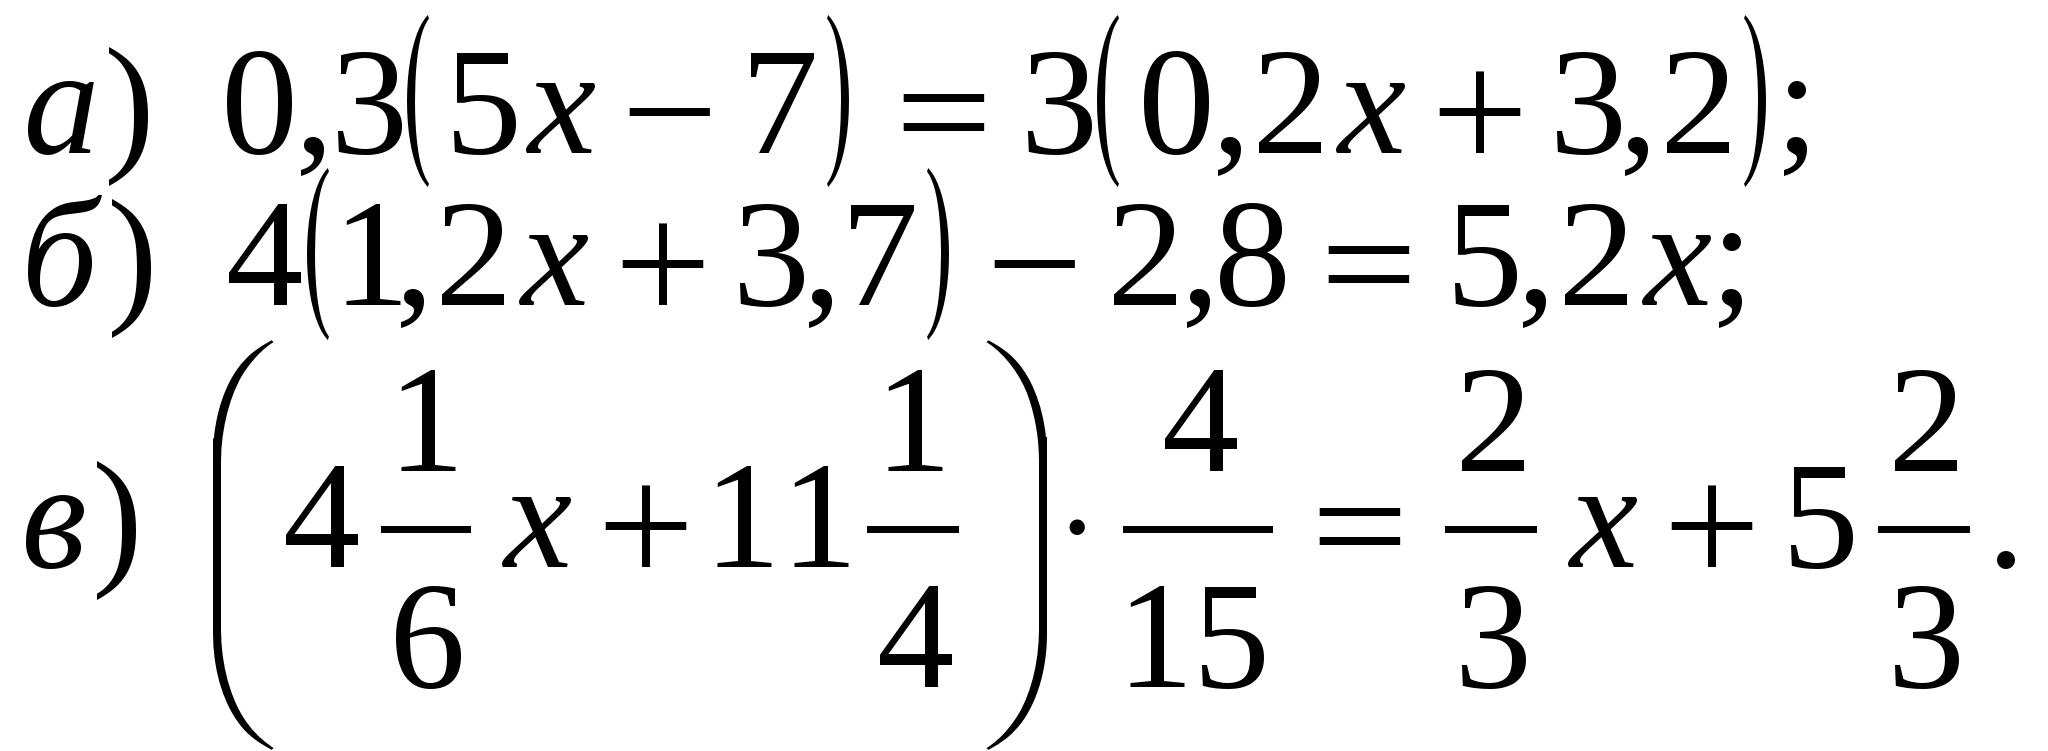 Решение уравнений 6 класс тренажер с ответами. Сложные уравнения 6 класс. 6 Класс математика уравнения сложные. Уравнения 6 класс по математике. Математика 6 класс уравнения.